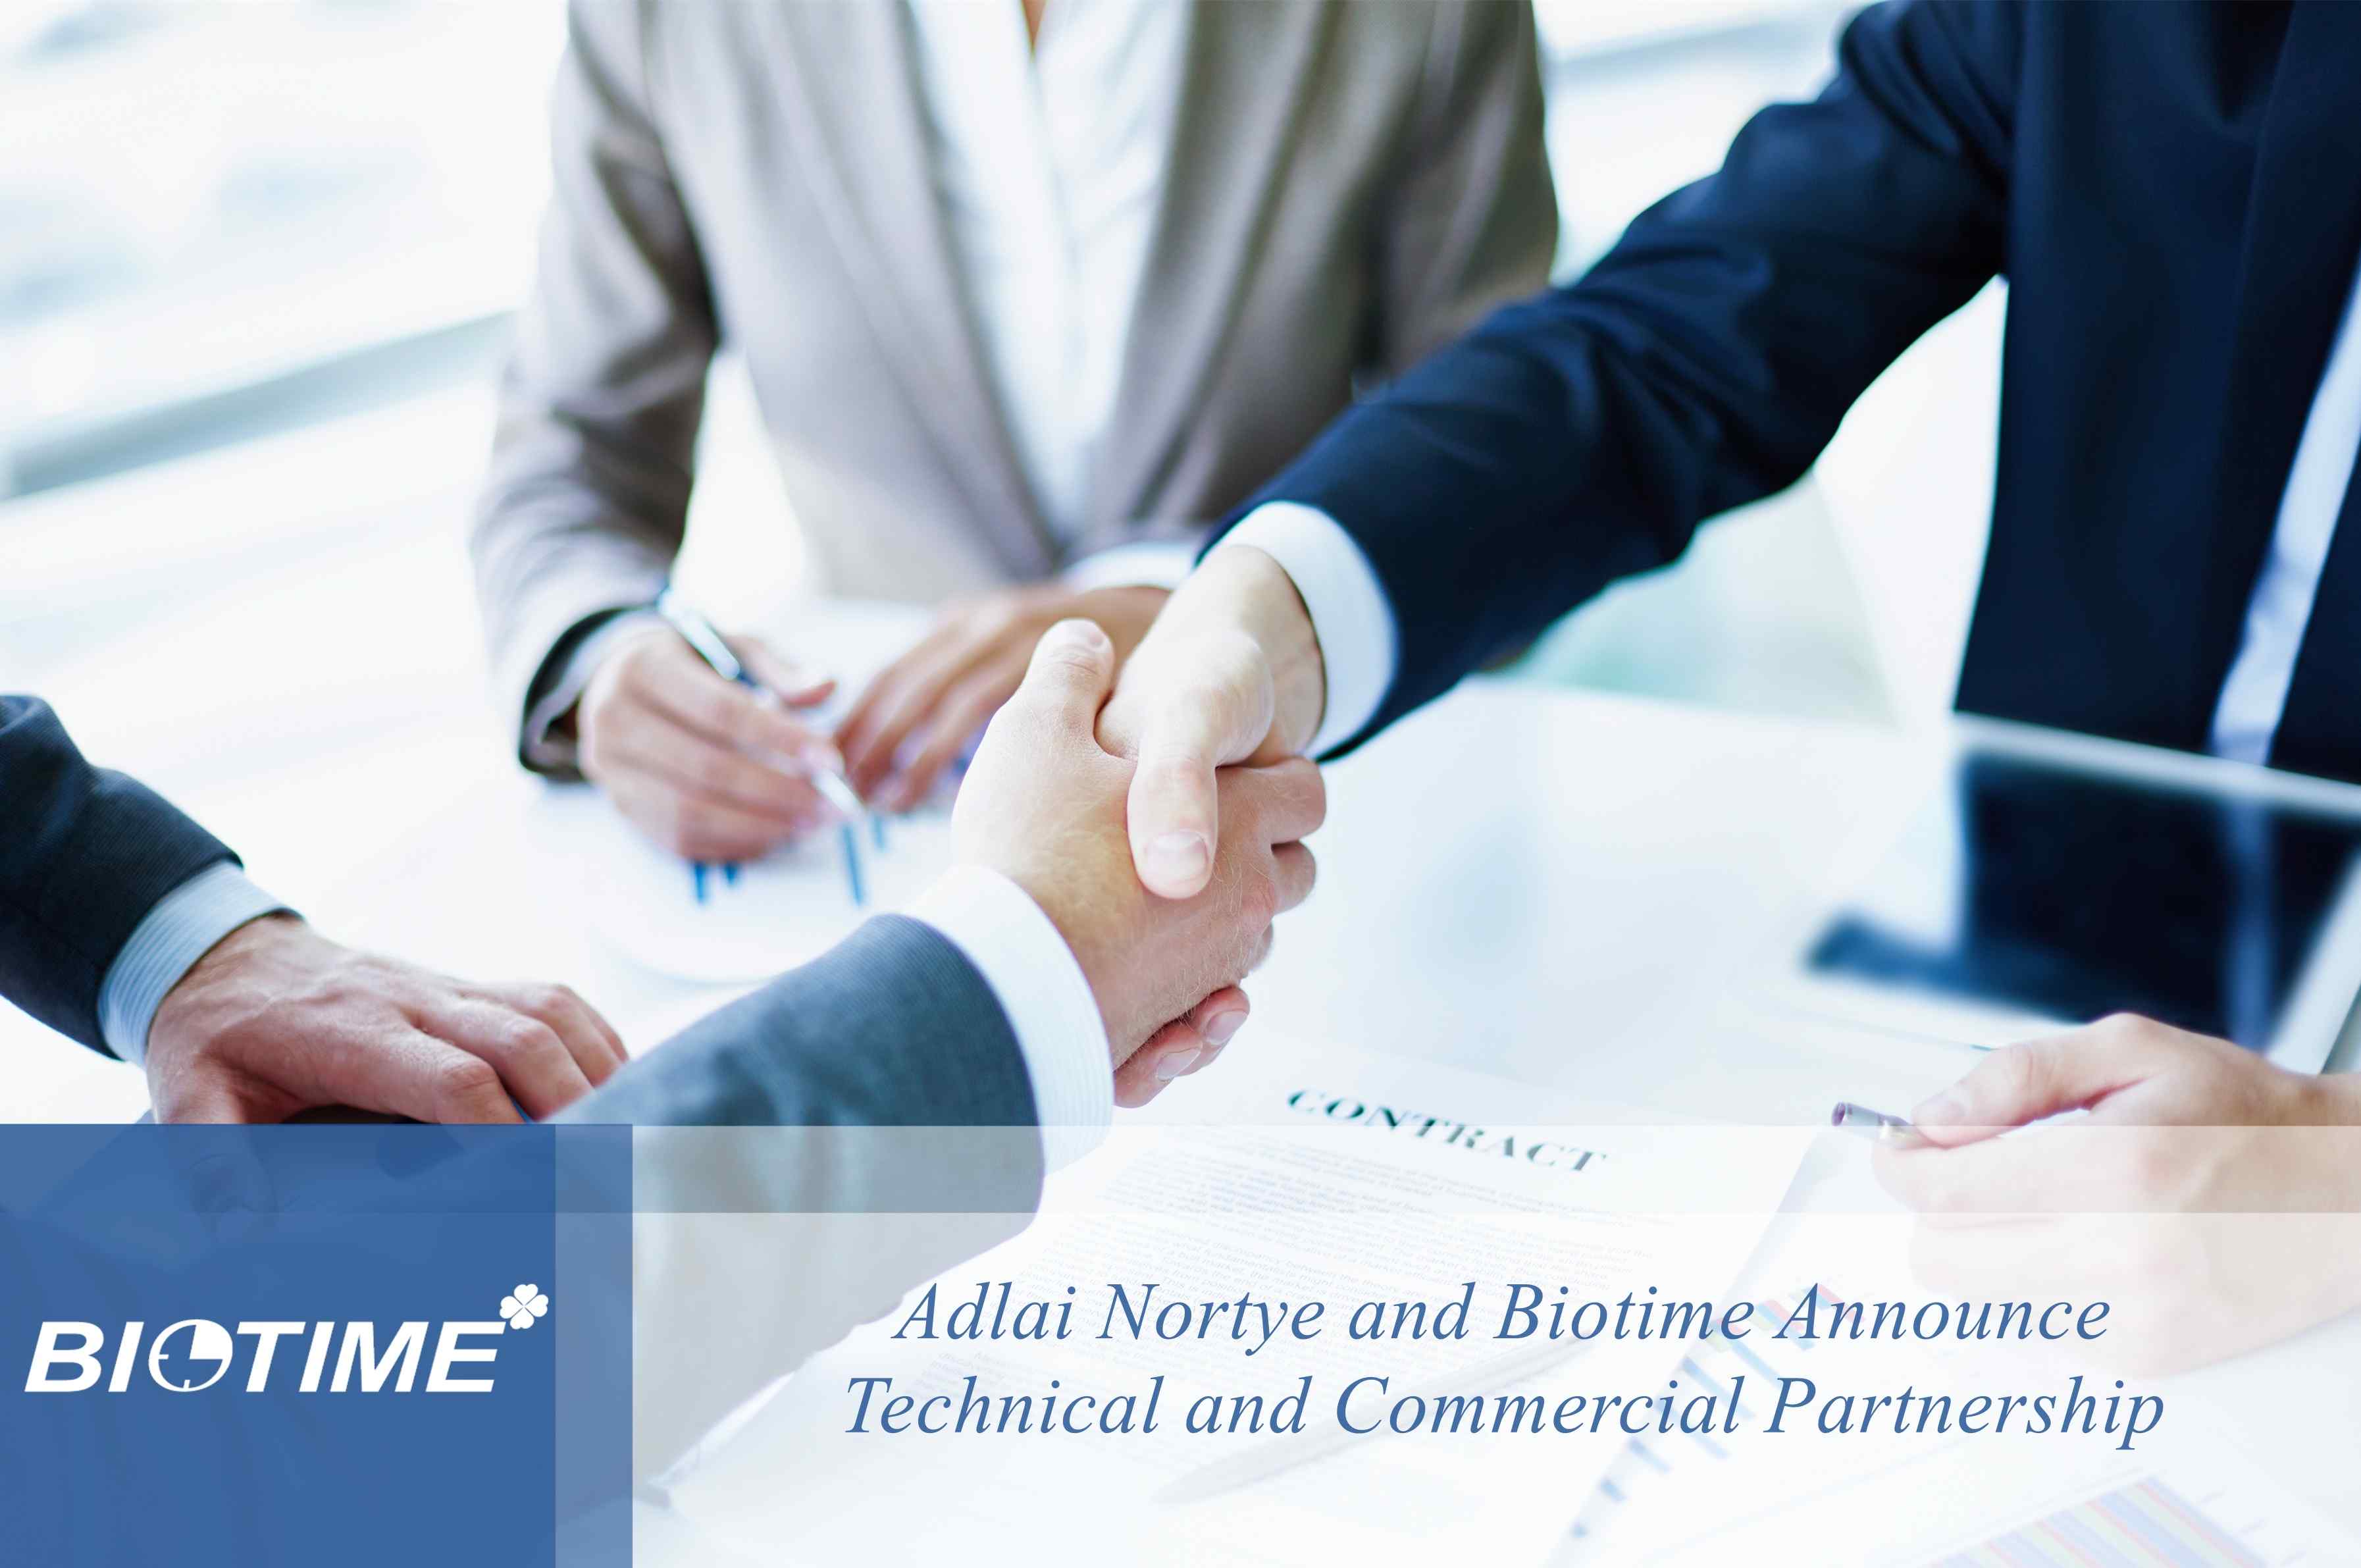 Adlai Nortye et Biotime annoncent un partenariat technique et commercial